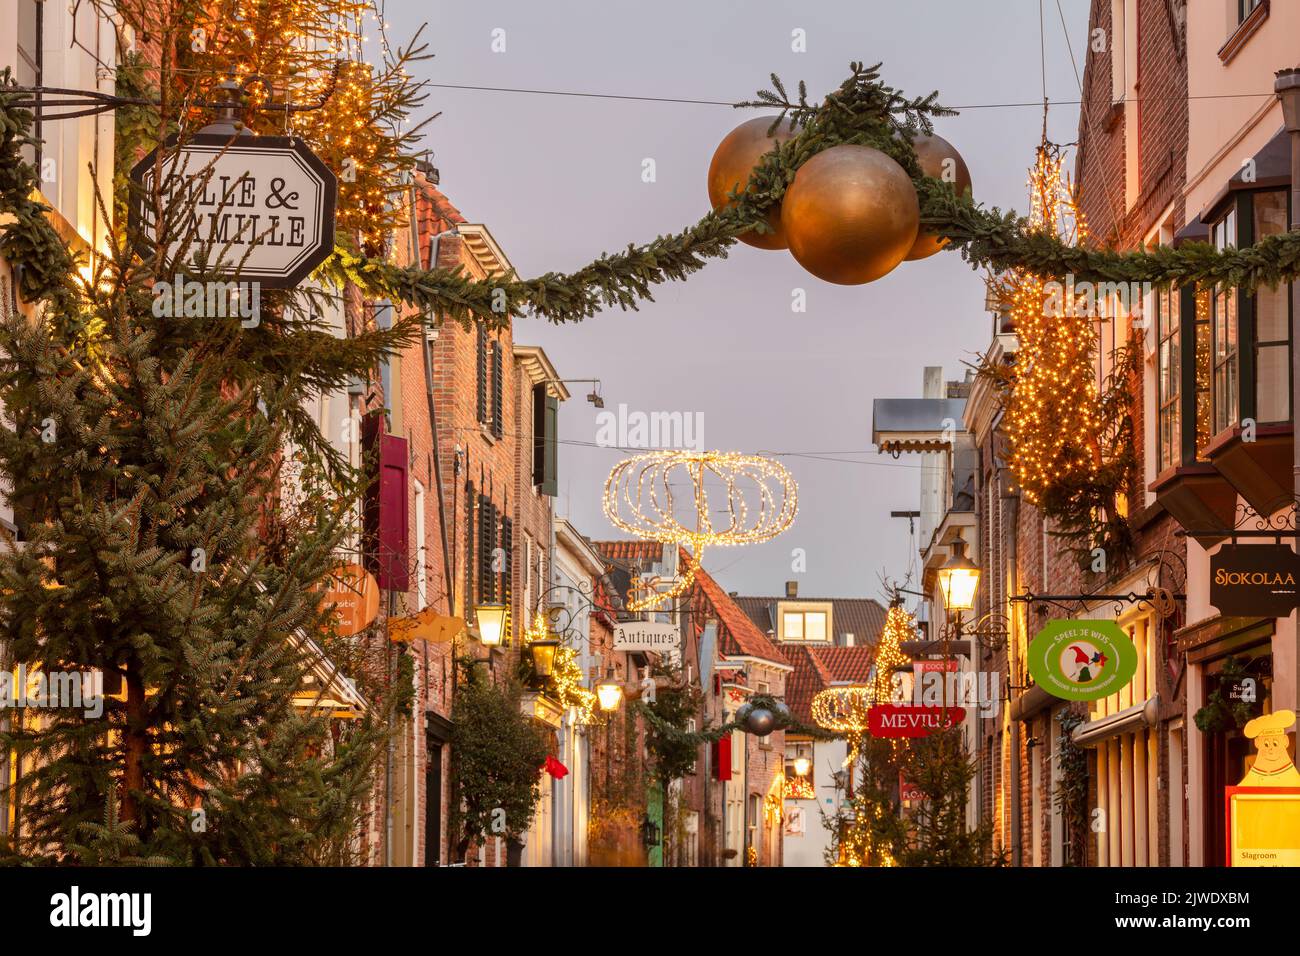 La famosa calle comercial Walstraat con decoración navideña en el centro de la ciudad holandesa de In Deventer Foto de stock